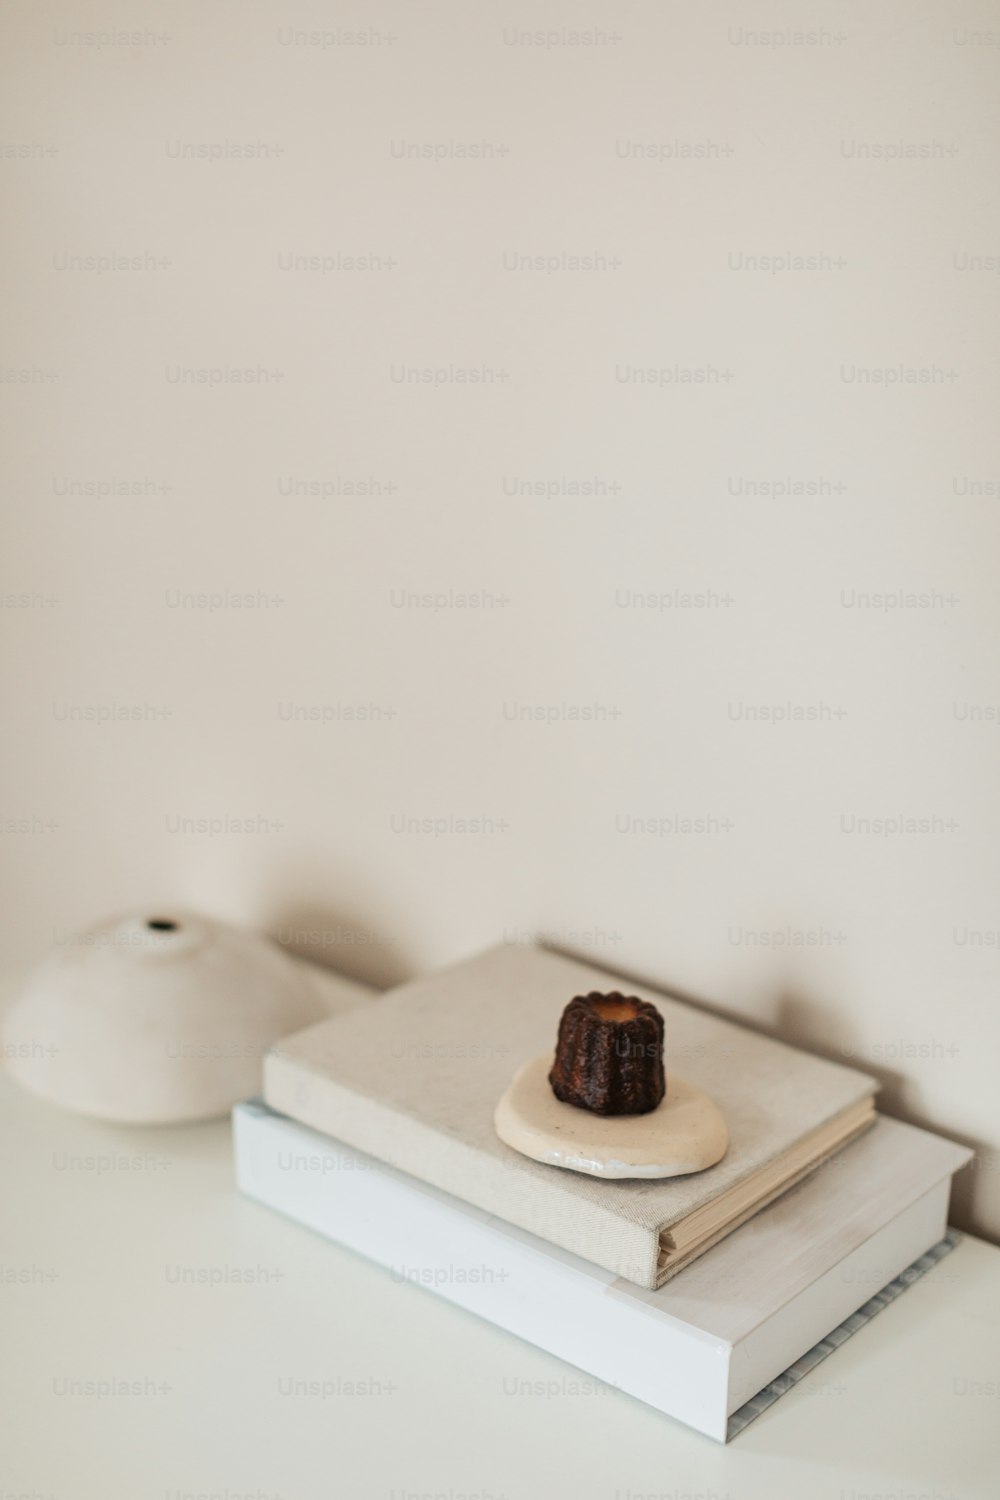 Ein kleines Stück Kuchen, das auf einem Buch sitzt